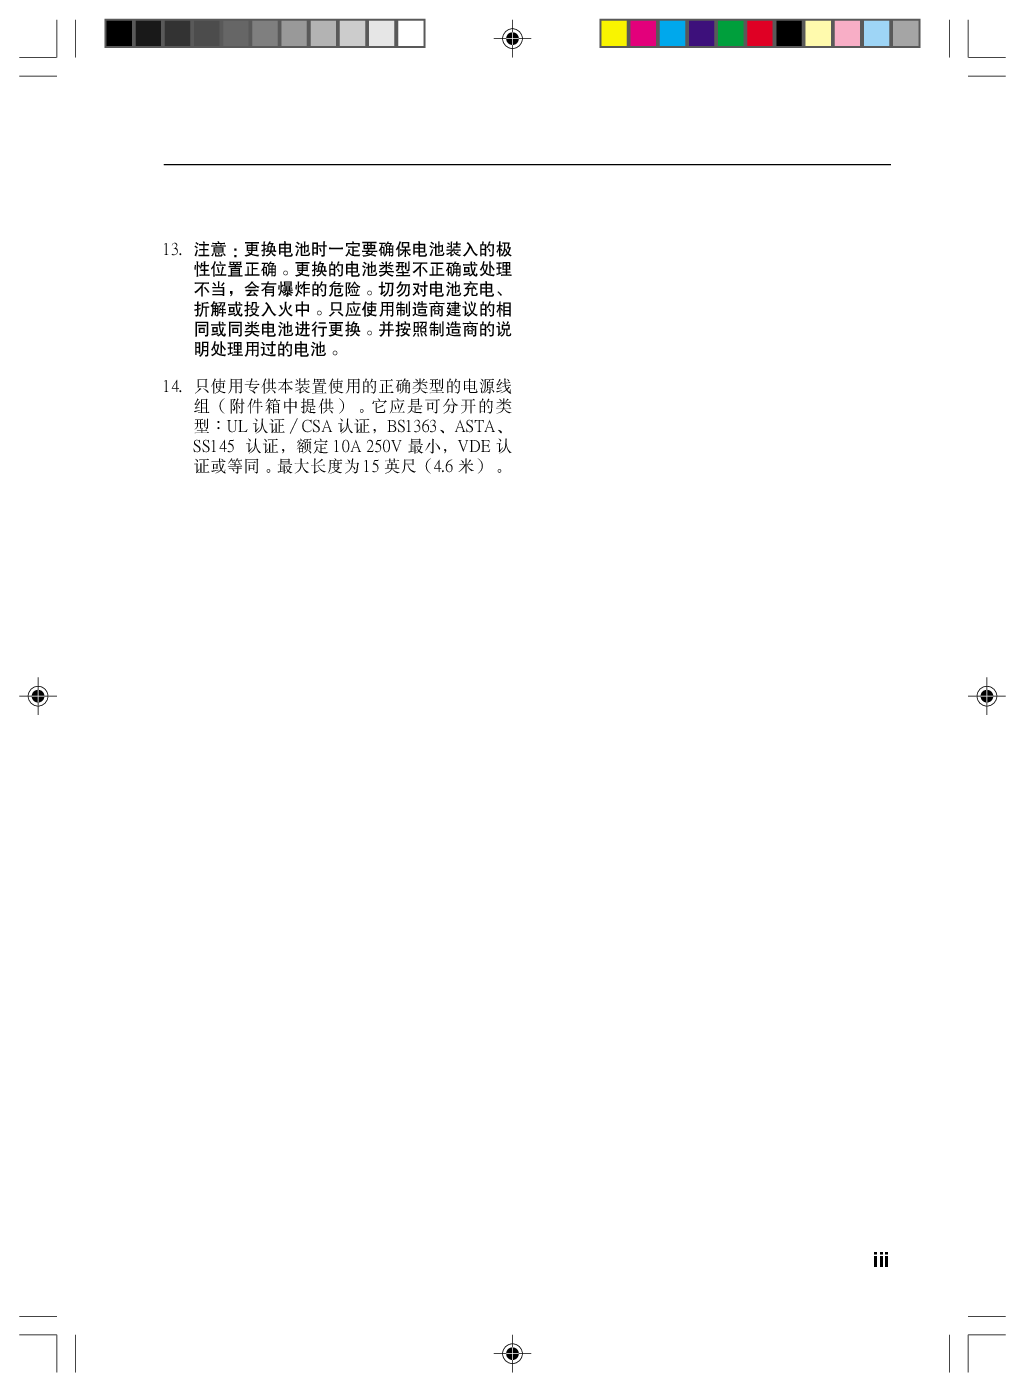 富士通 Fujitsu LifeBook V1010 Windows Vista 使用说明书 第2页